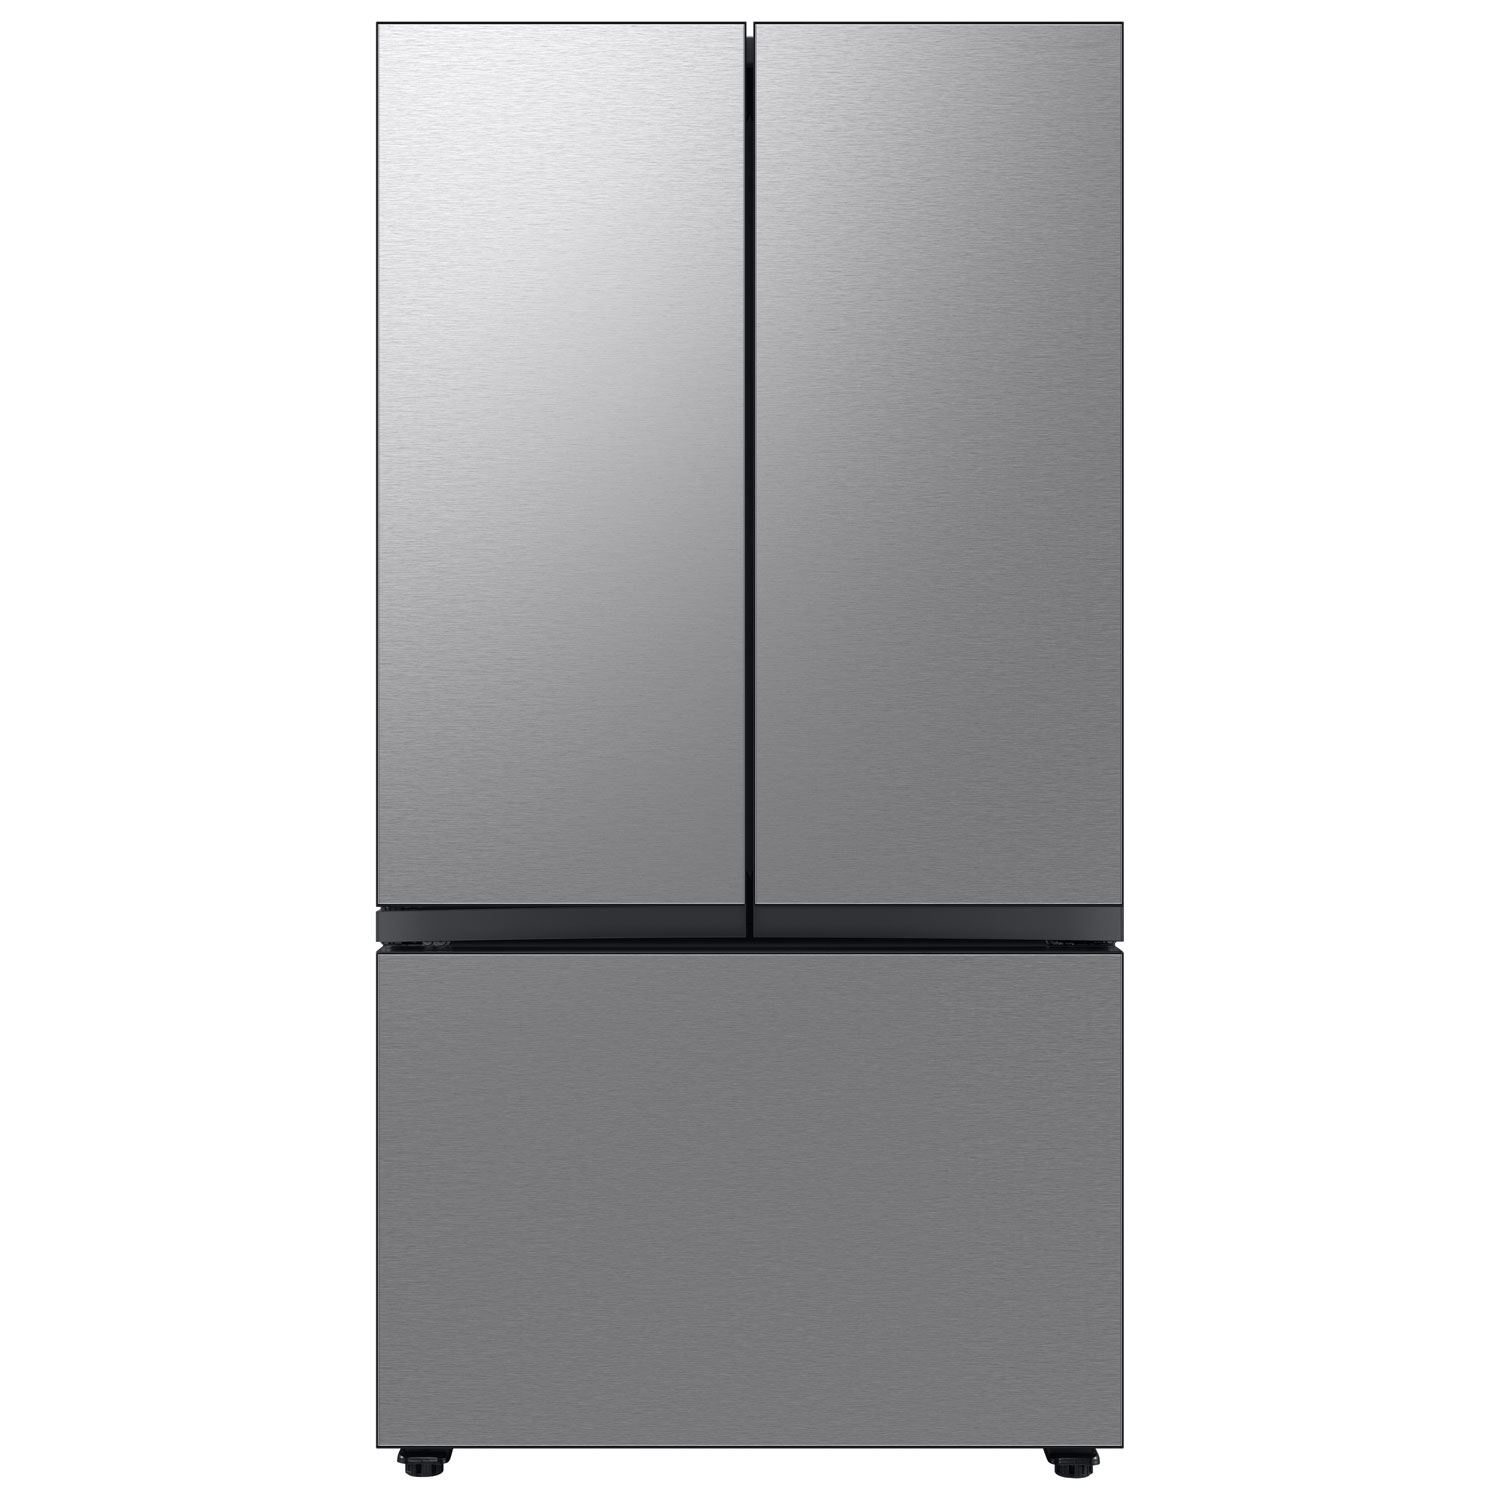 Samsung BESPOKE 36" 23.9 Cu. Ft. 3-Door French Door Refrigerator with Water Dispenser (RF24BB6600QLAA) - Stainless